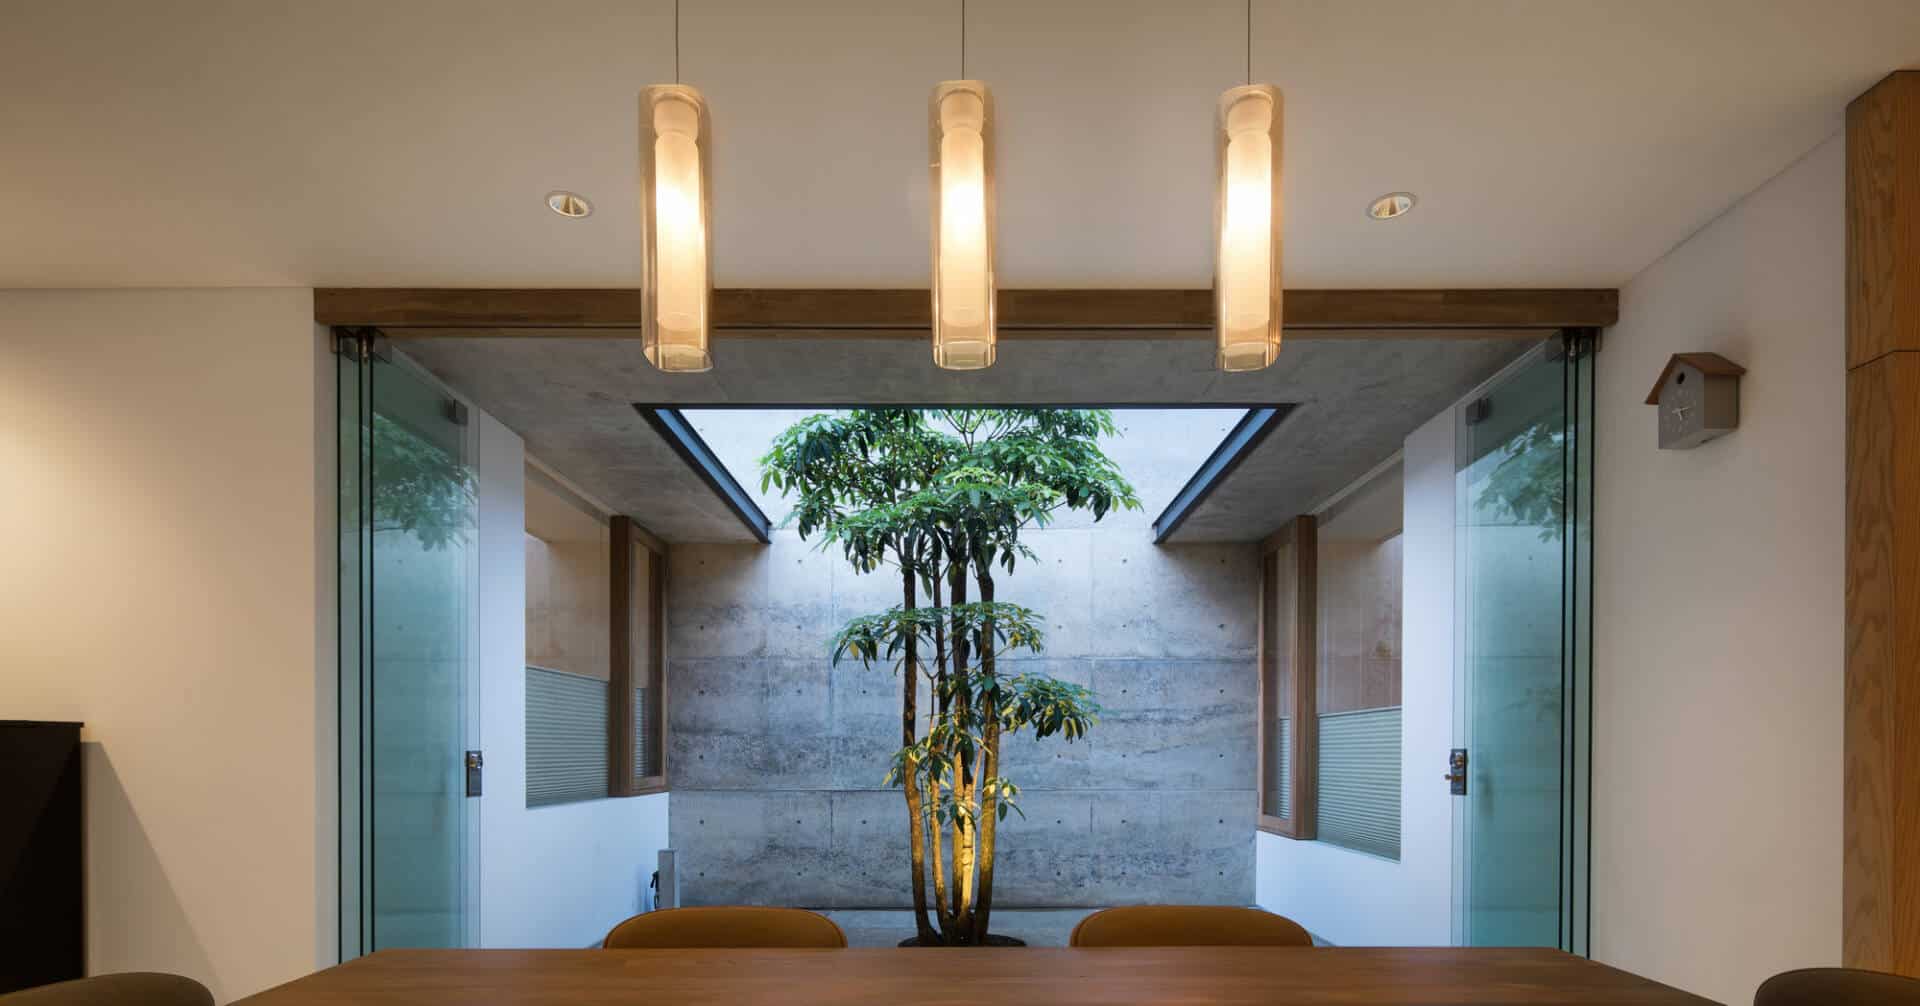 Ngẩn ngơ trước ngôi nhà 1 tầng mái Thái, thiết kế chú trọng cách lấy sáng tự nhiên cả trong và ngoài nhà 